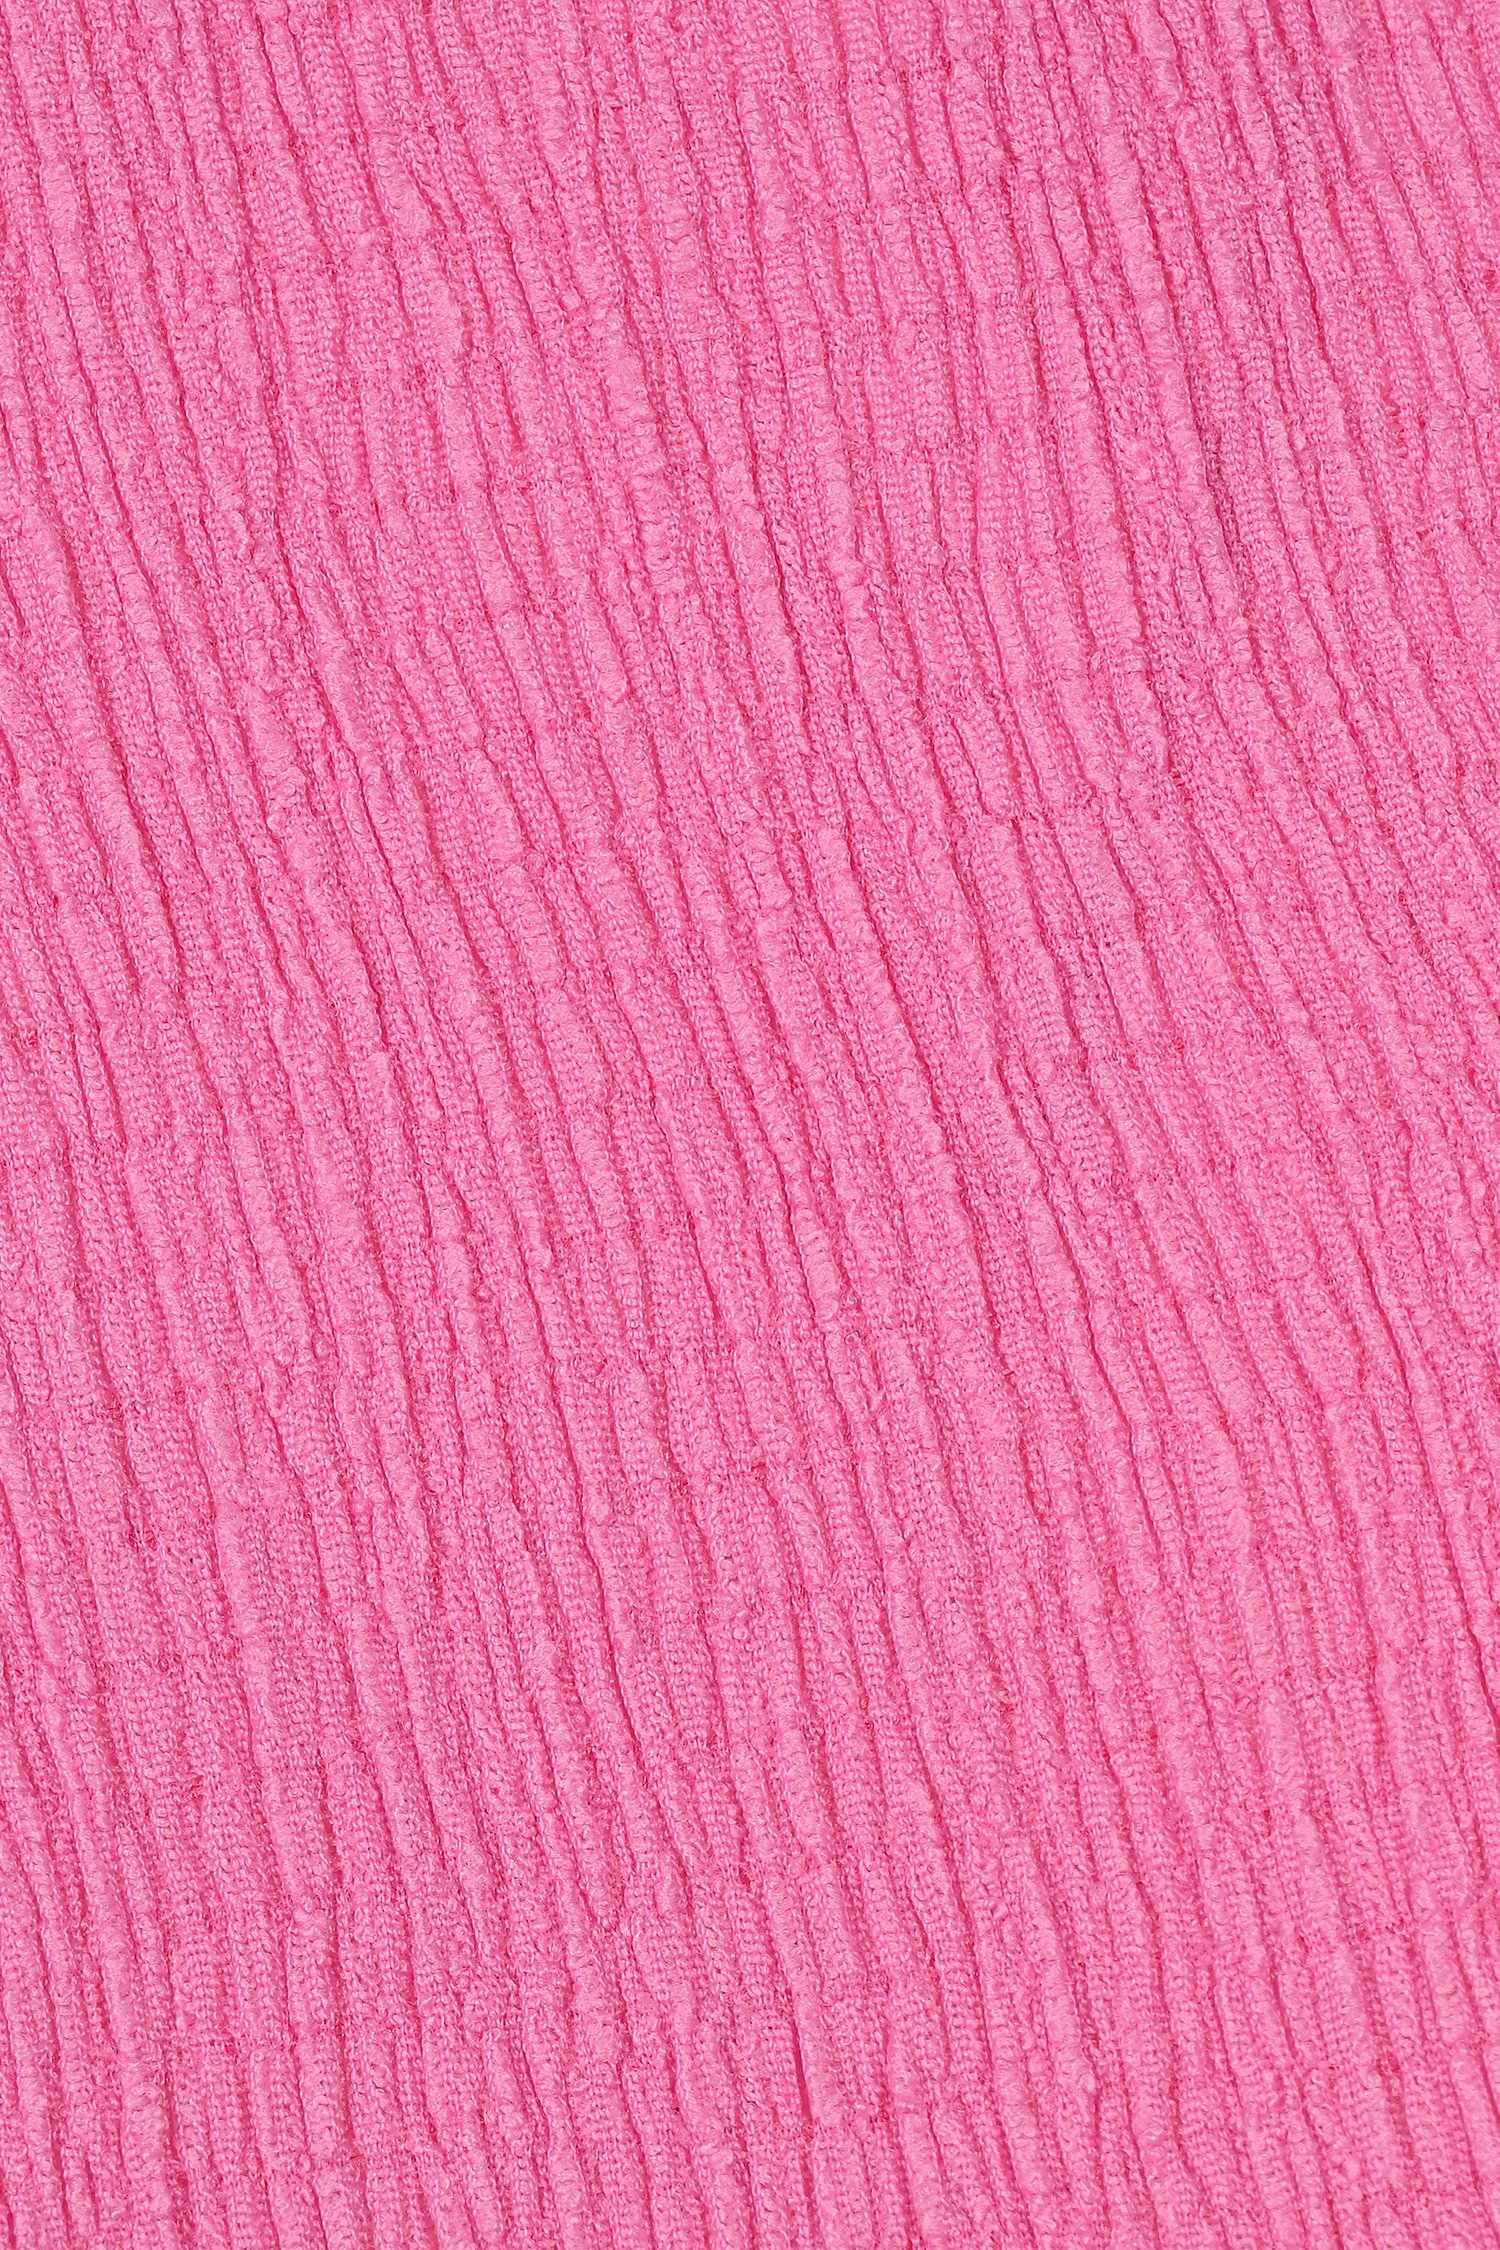 T-shirt texturé rose de Bicalla pour Femmes